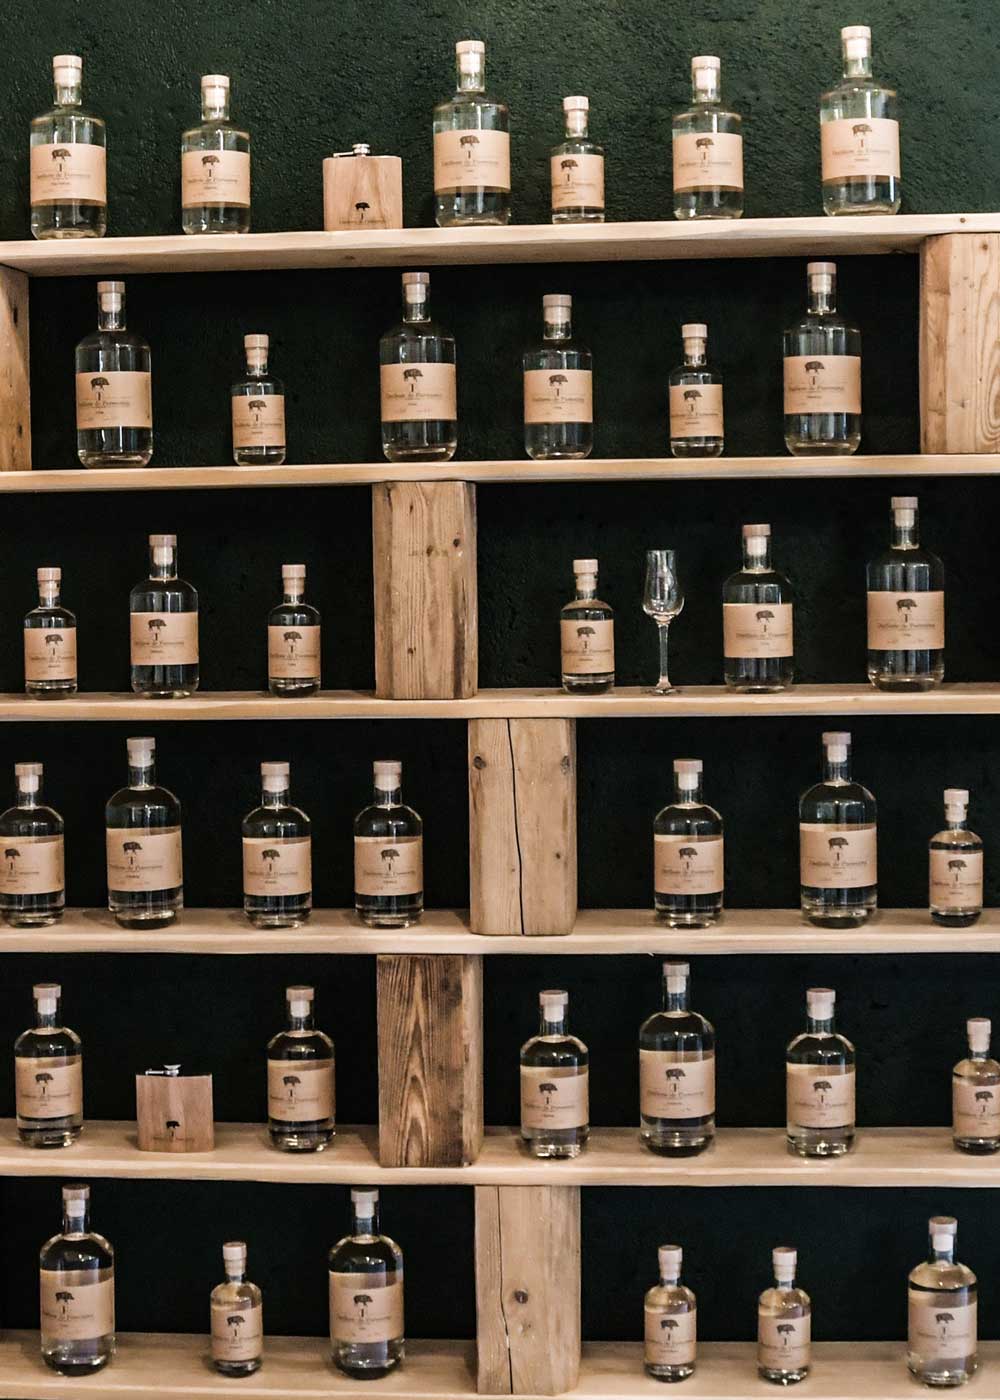 distillerie porrentruy bottles on shelf